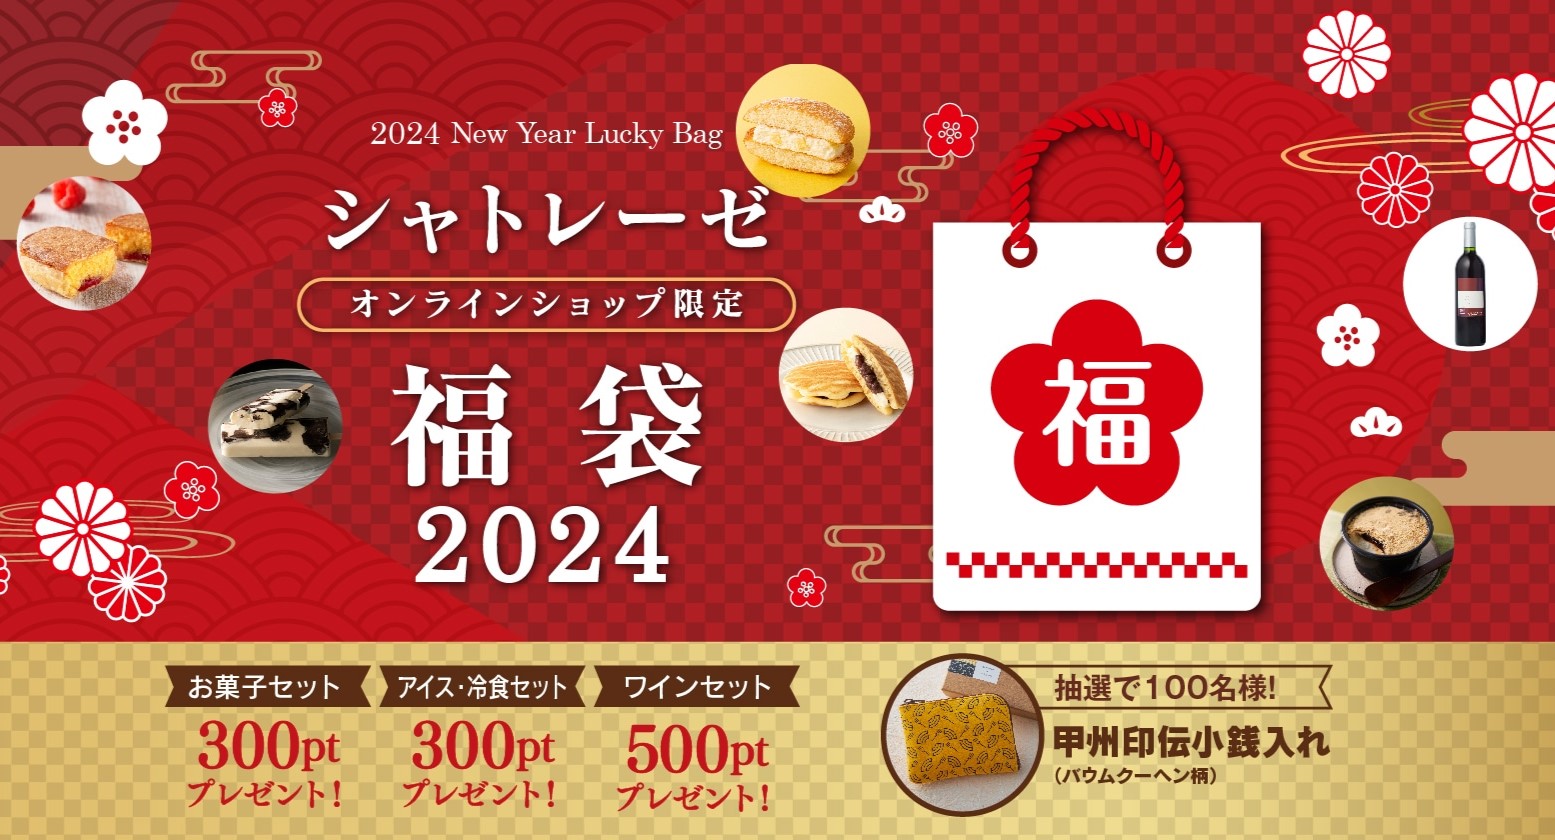 シャトレーゼ「福袋 2024」注文受付スタート、お菓子セット・アイス